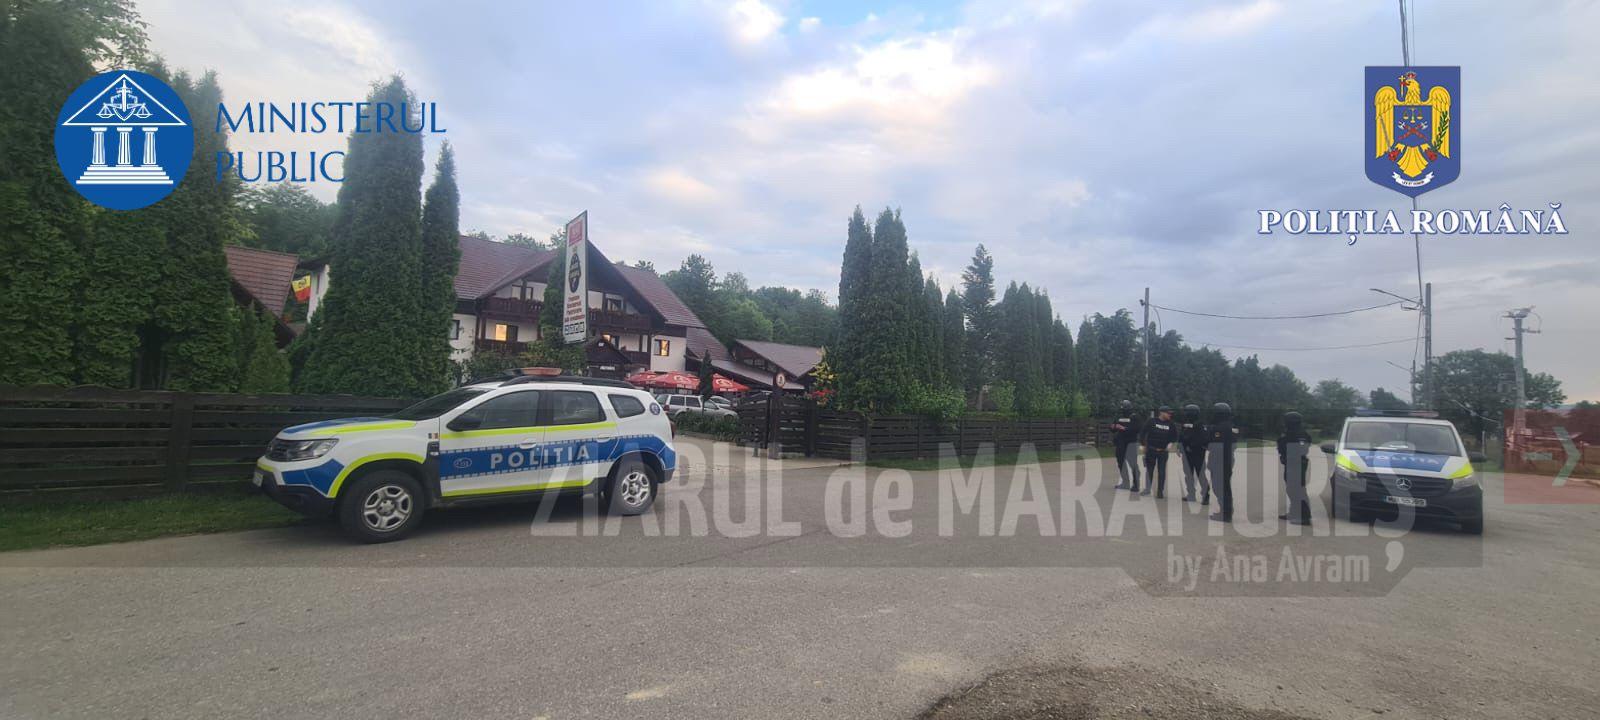 Șapte locuințe din Săpânța au fost verificate de polițiști. Patru persoane sunt bănuite de tăiere fără drept de arbori, furt de arbori